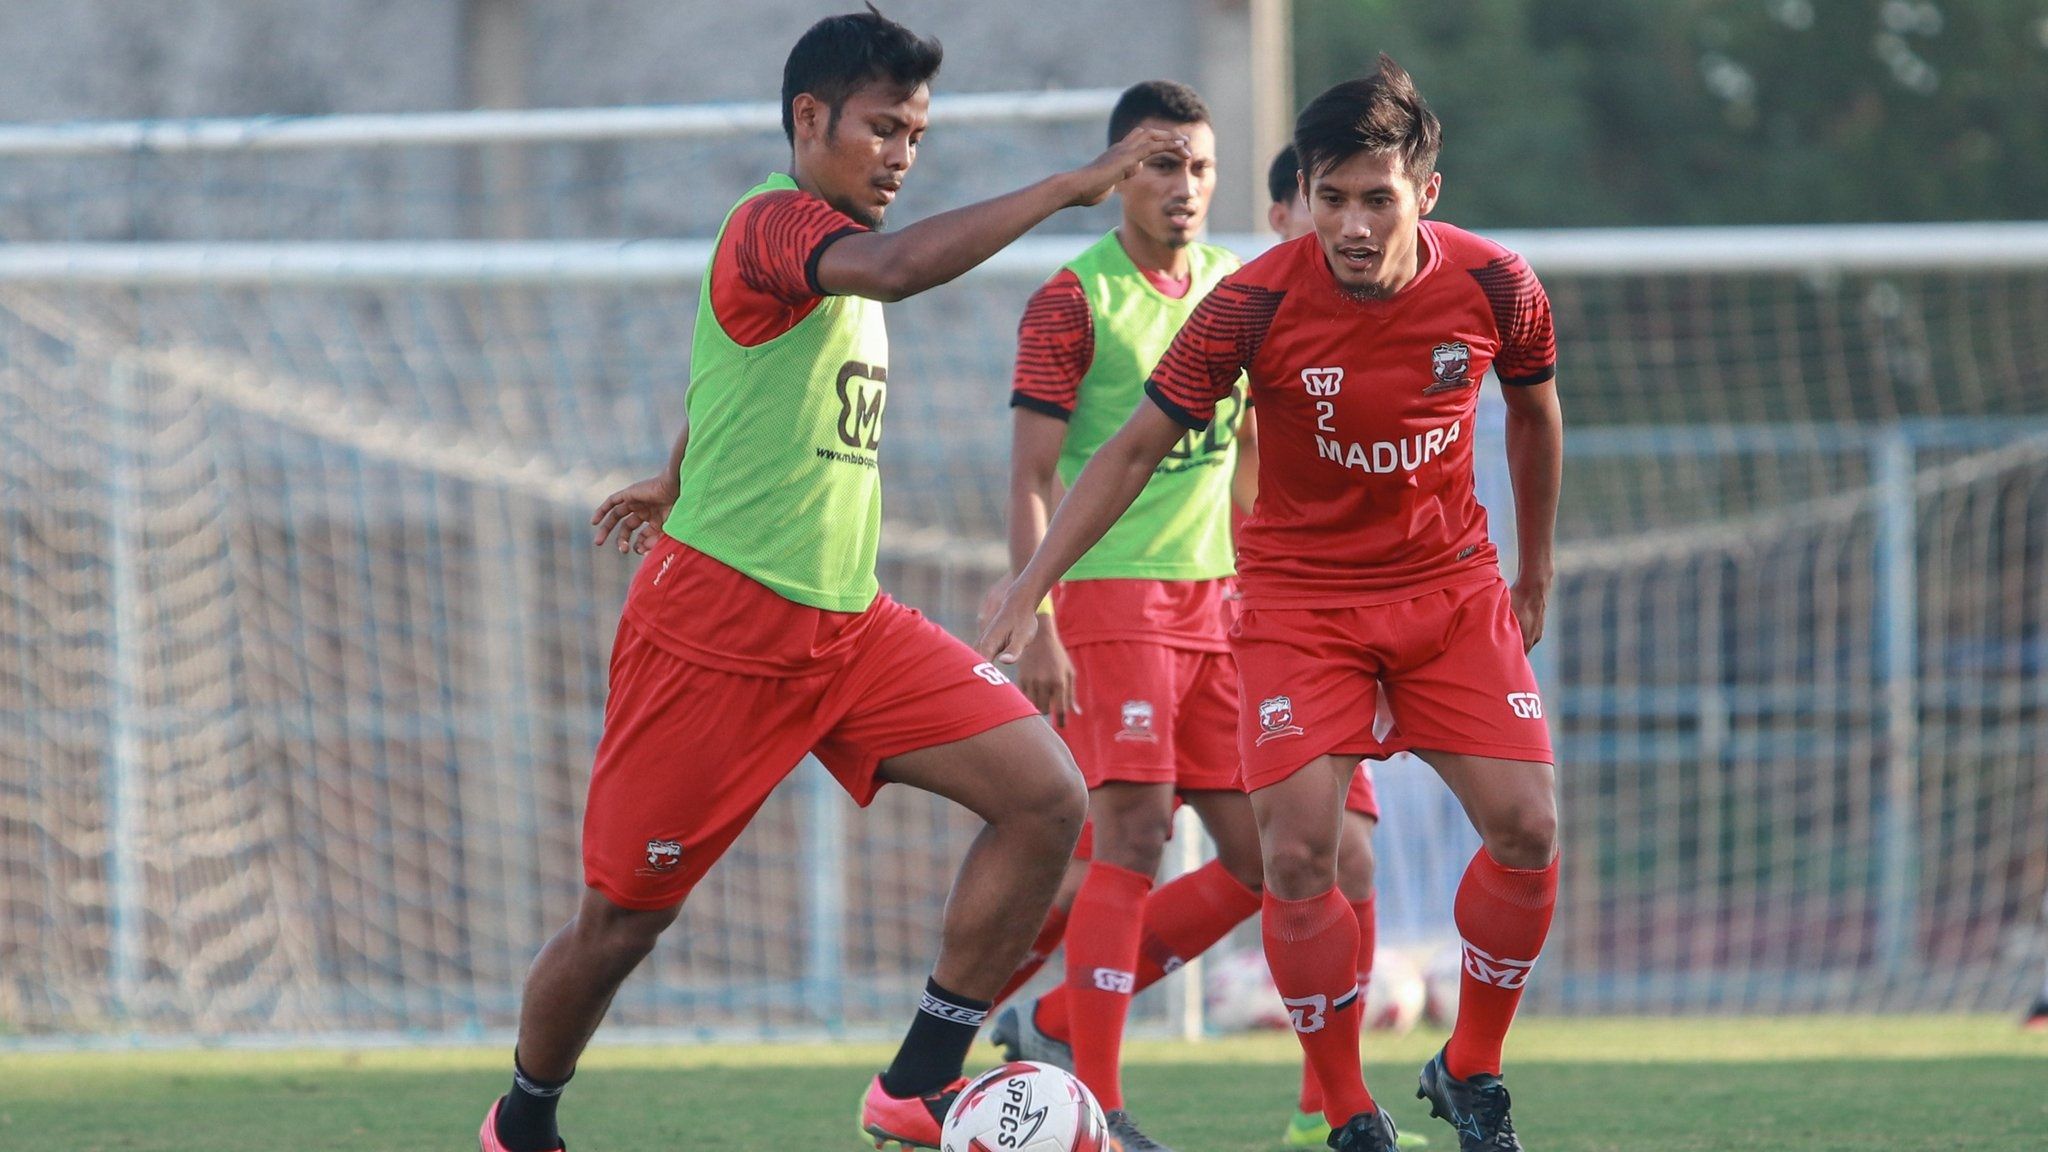 Gelandang Madura United, Zulfiandi (kiri) berlatih bersama-sama rekan-rekannya di Madura pada 10 September 2020. 